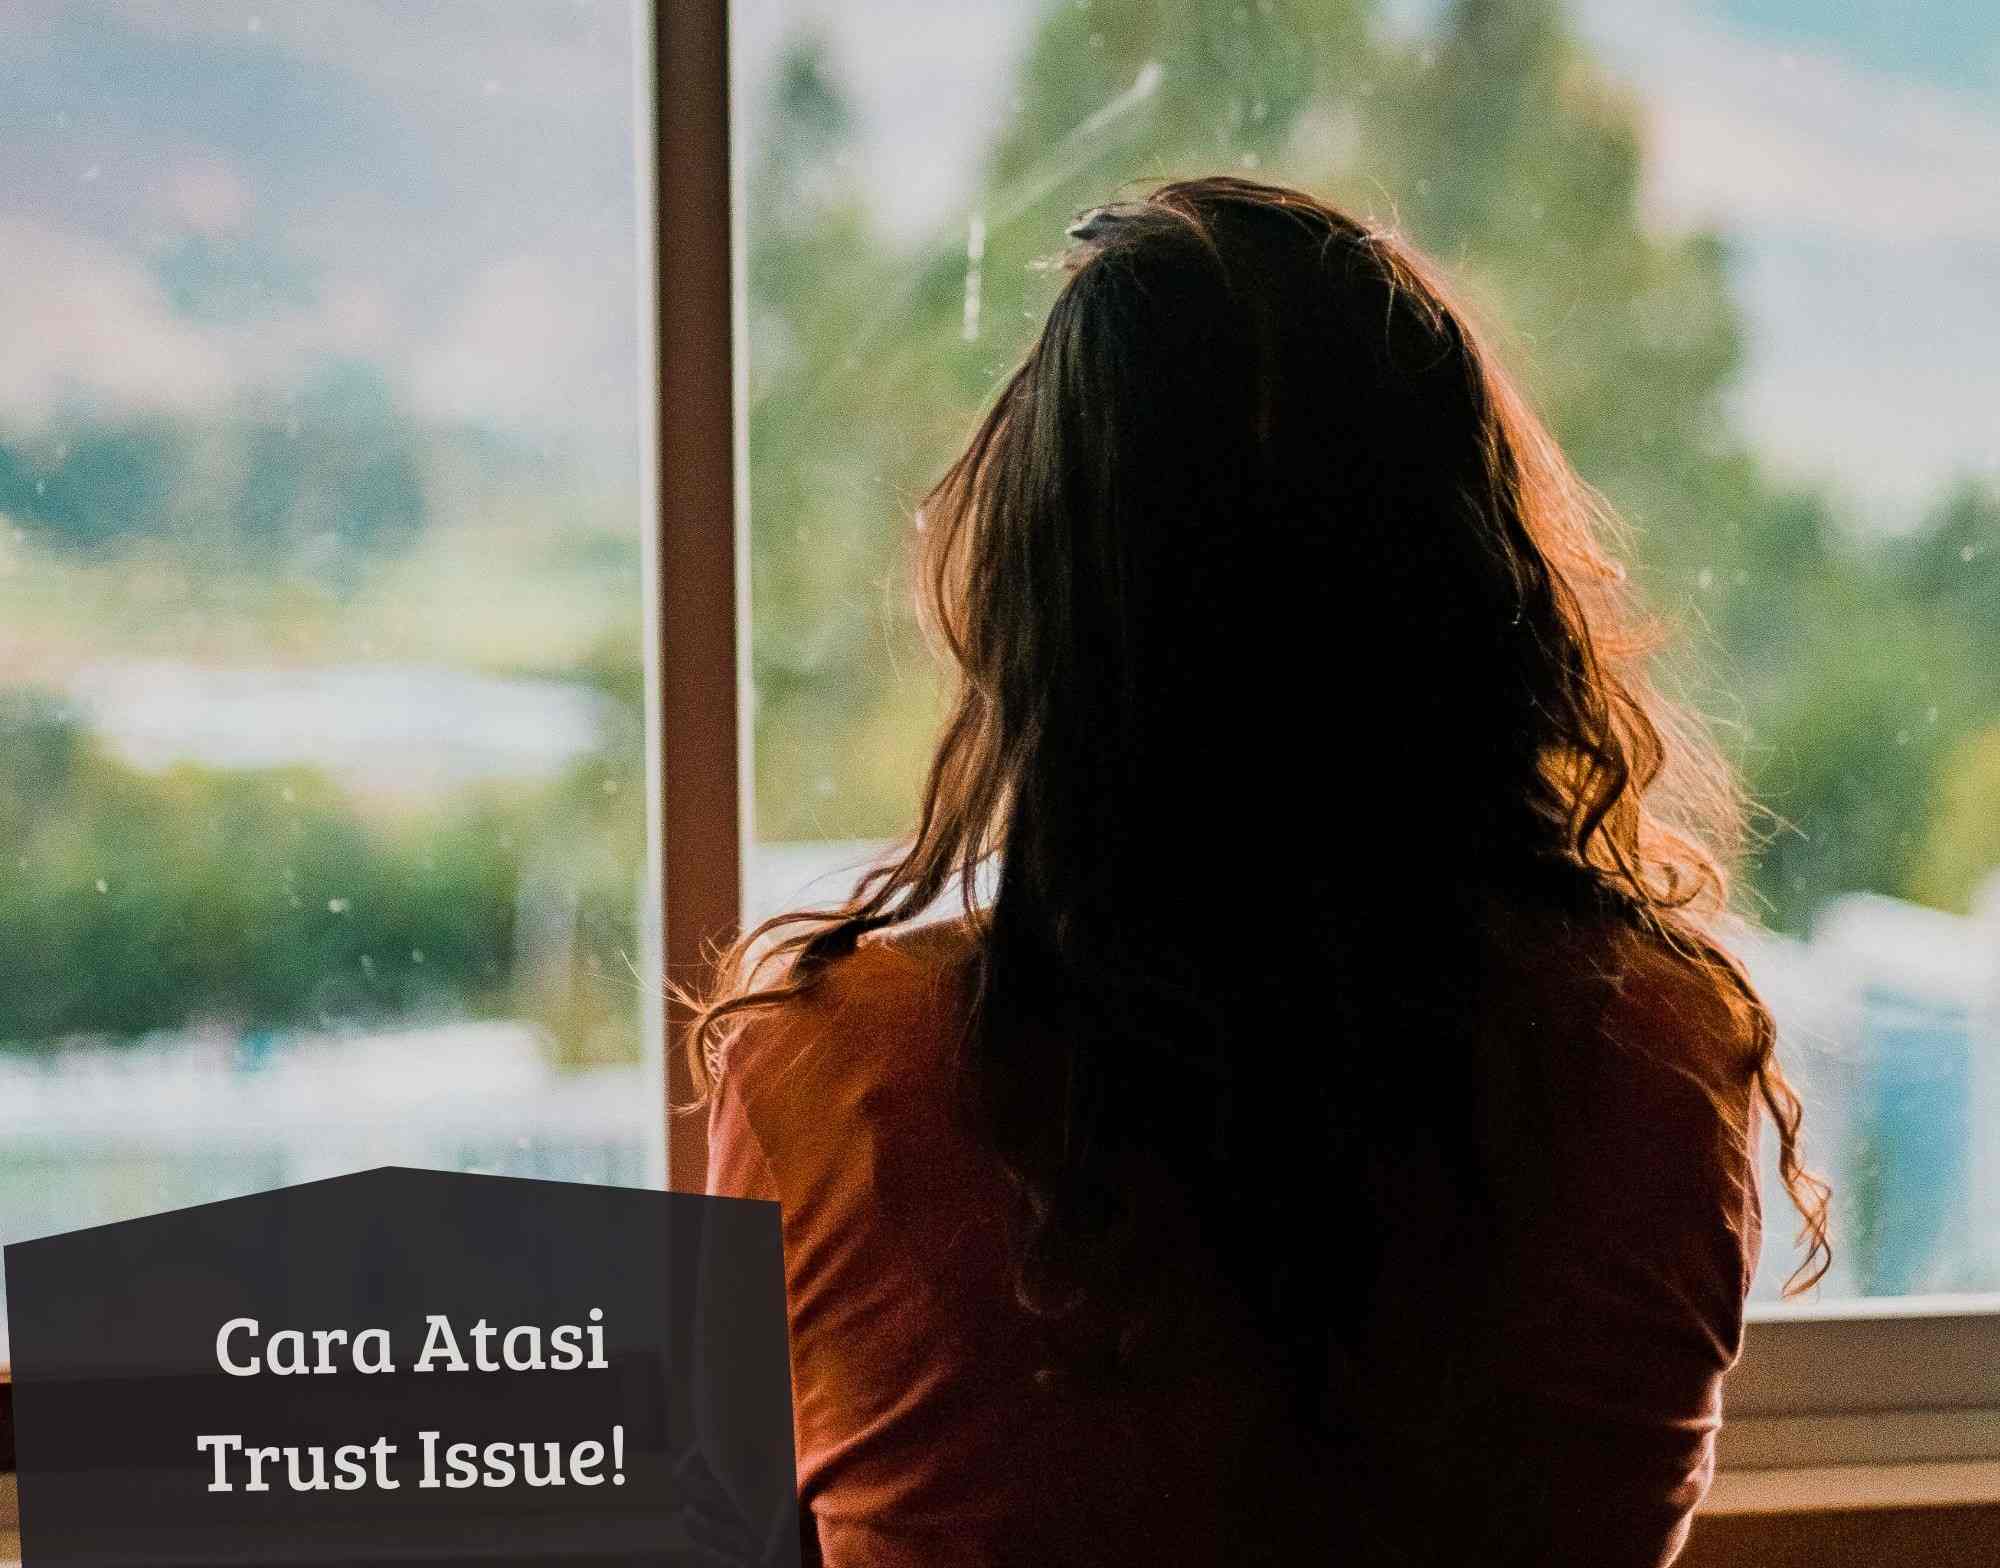 Kamu Wajib Tahu! Ini 5 Cara Mudah Atasi Trust Issue, Cukup Percaya pada Diri Sendiri